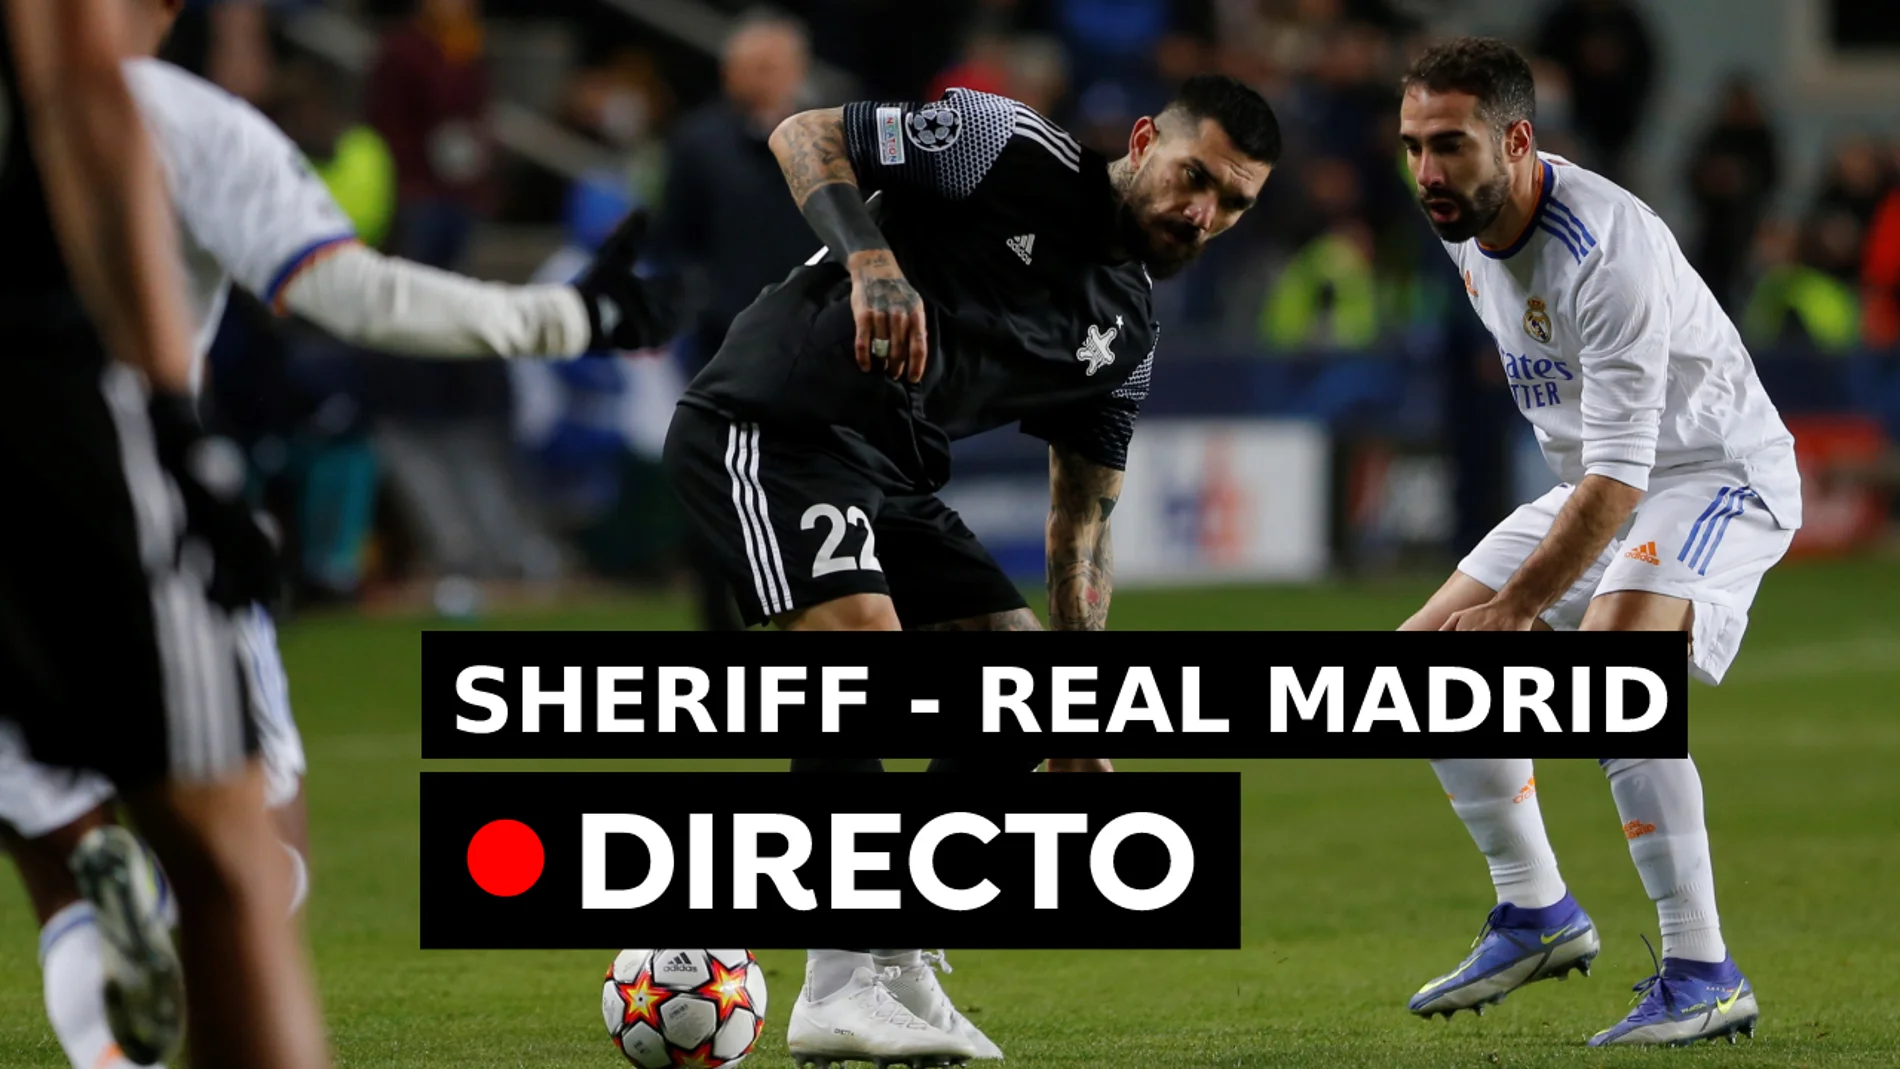 Resultado del Sheriff - Real Madrid de hoy en directo, Champions League 